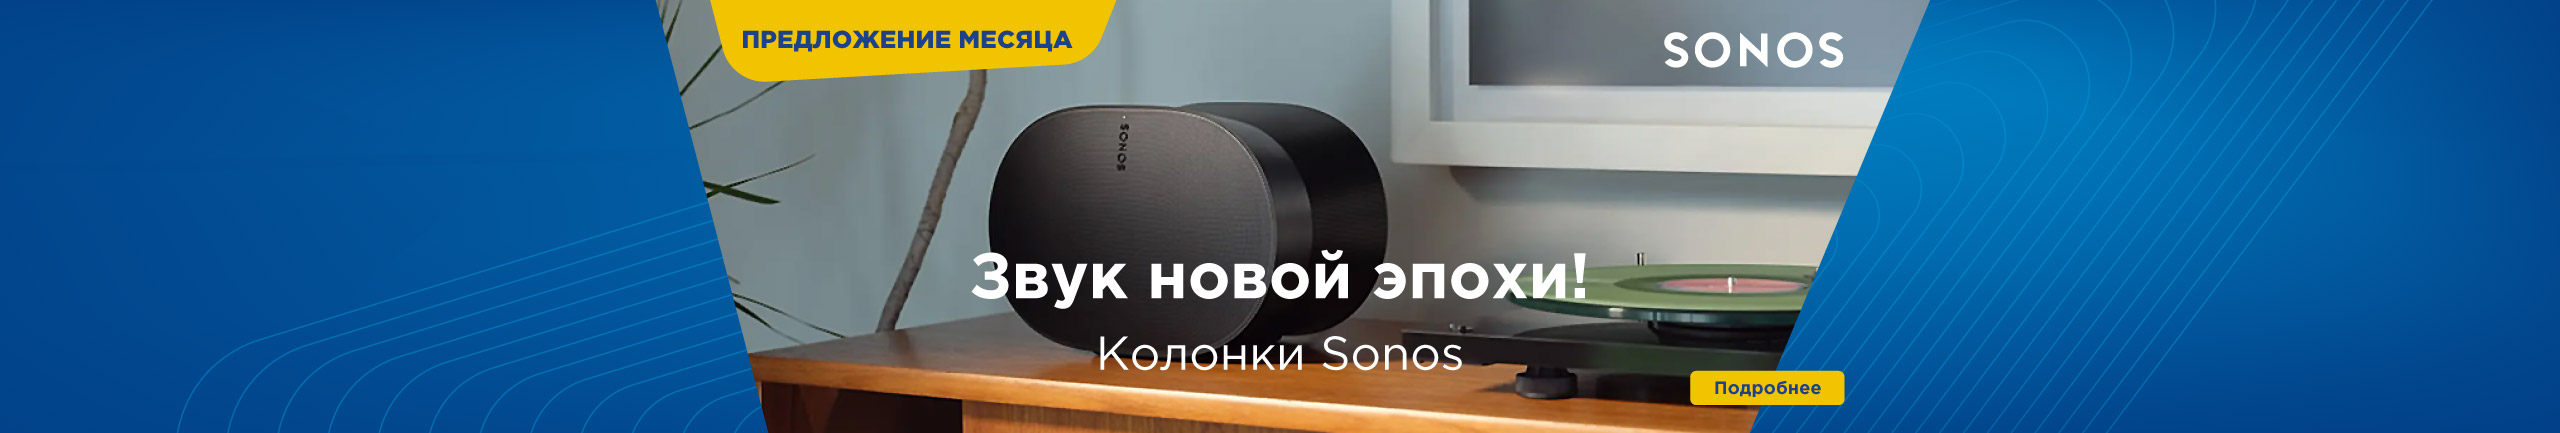 Колонки Sonos